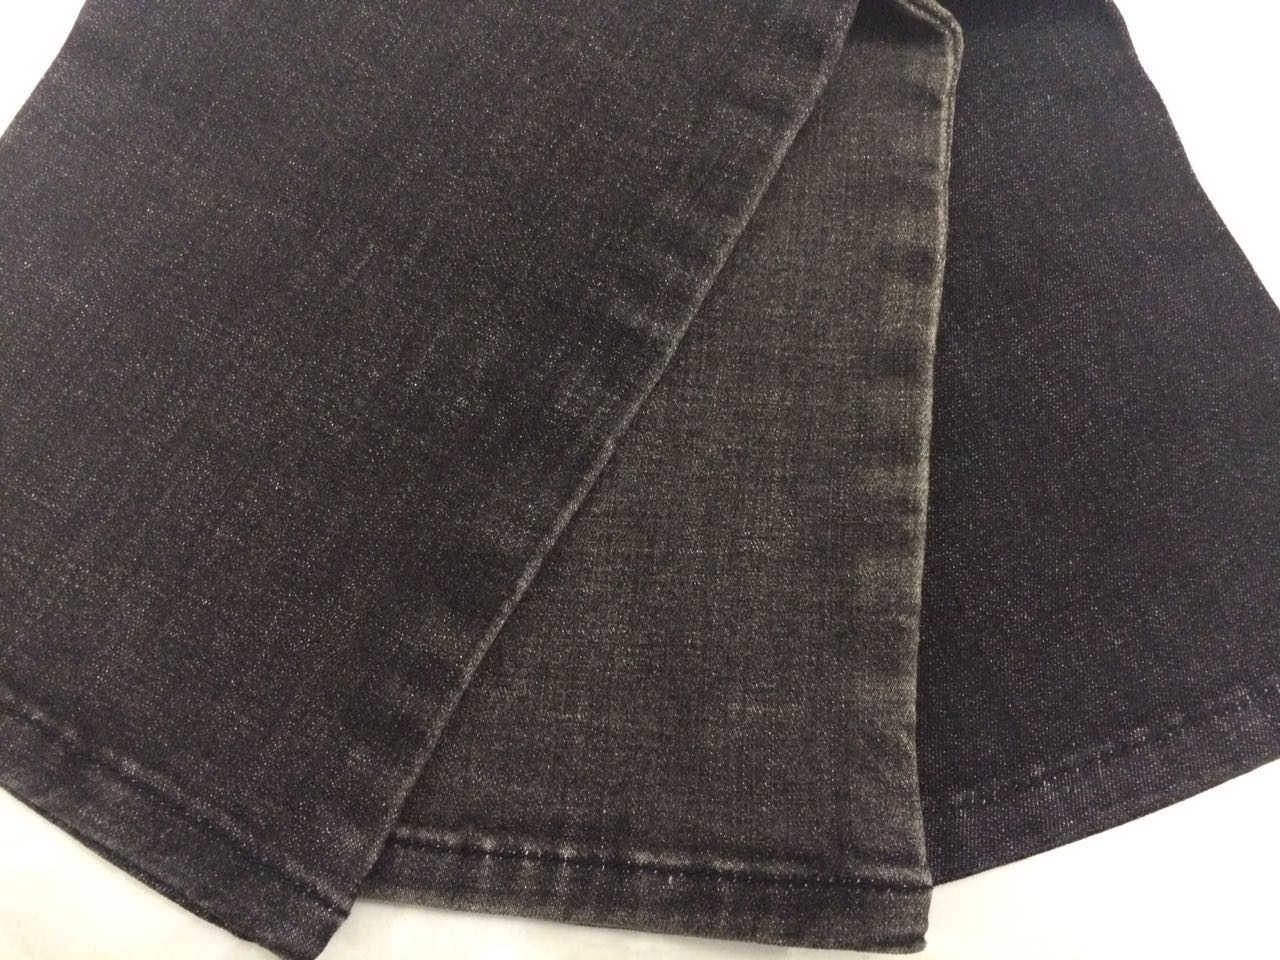 vải jean cotton giá rẻ khổ 1m6 , đa dạng mẫu mã phong phú - 11